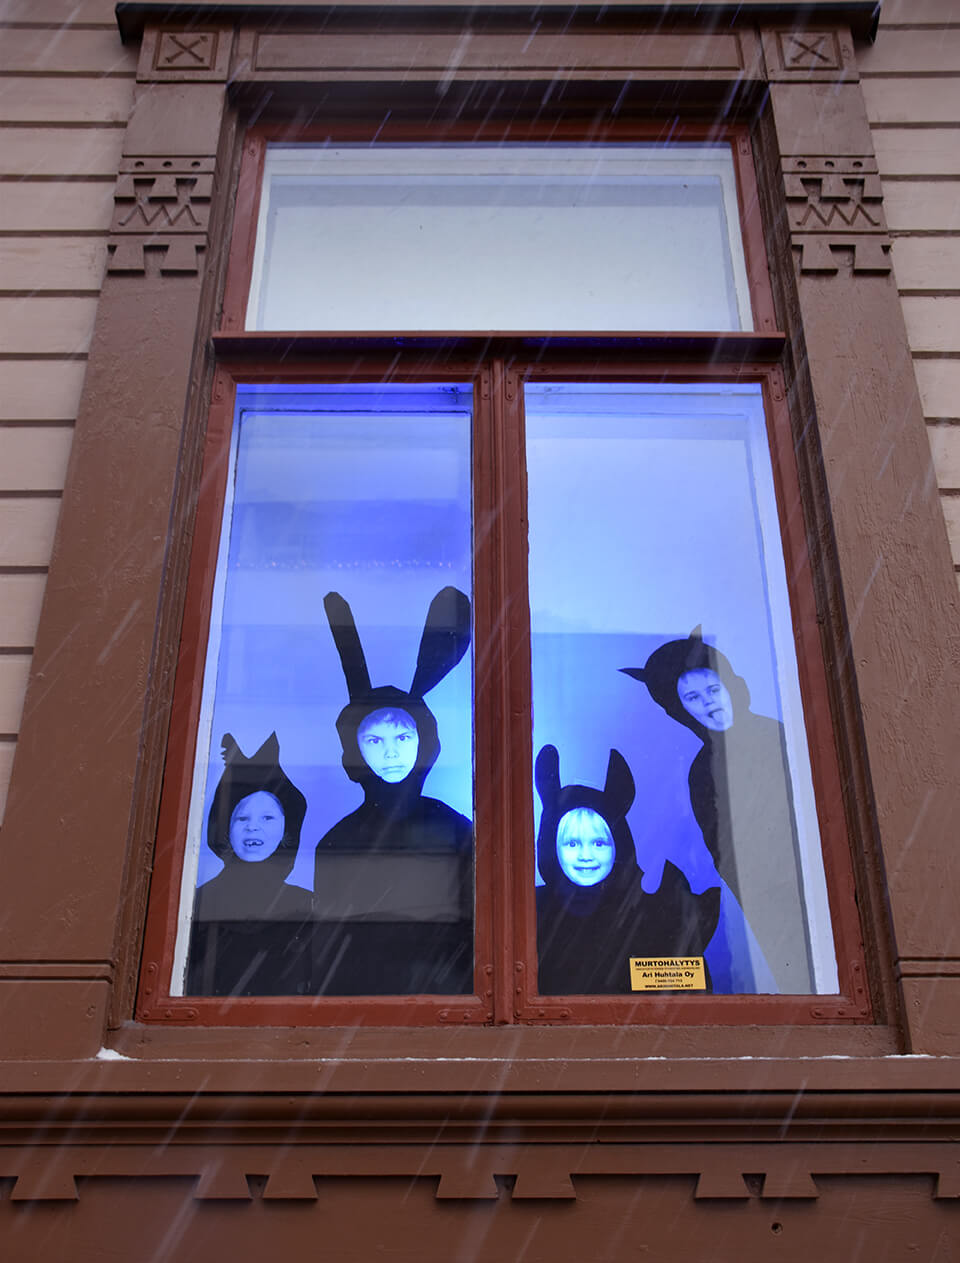 Porin taidekoulun oppilaiden eläimellisiä omakuvia koulun ikkunoissa.